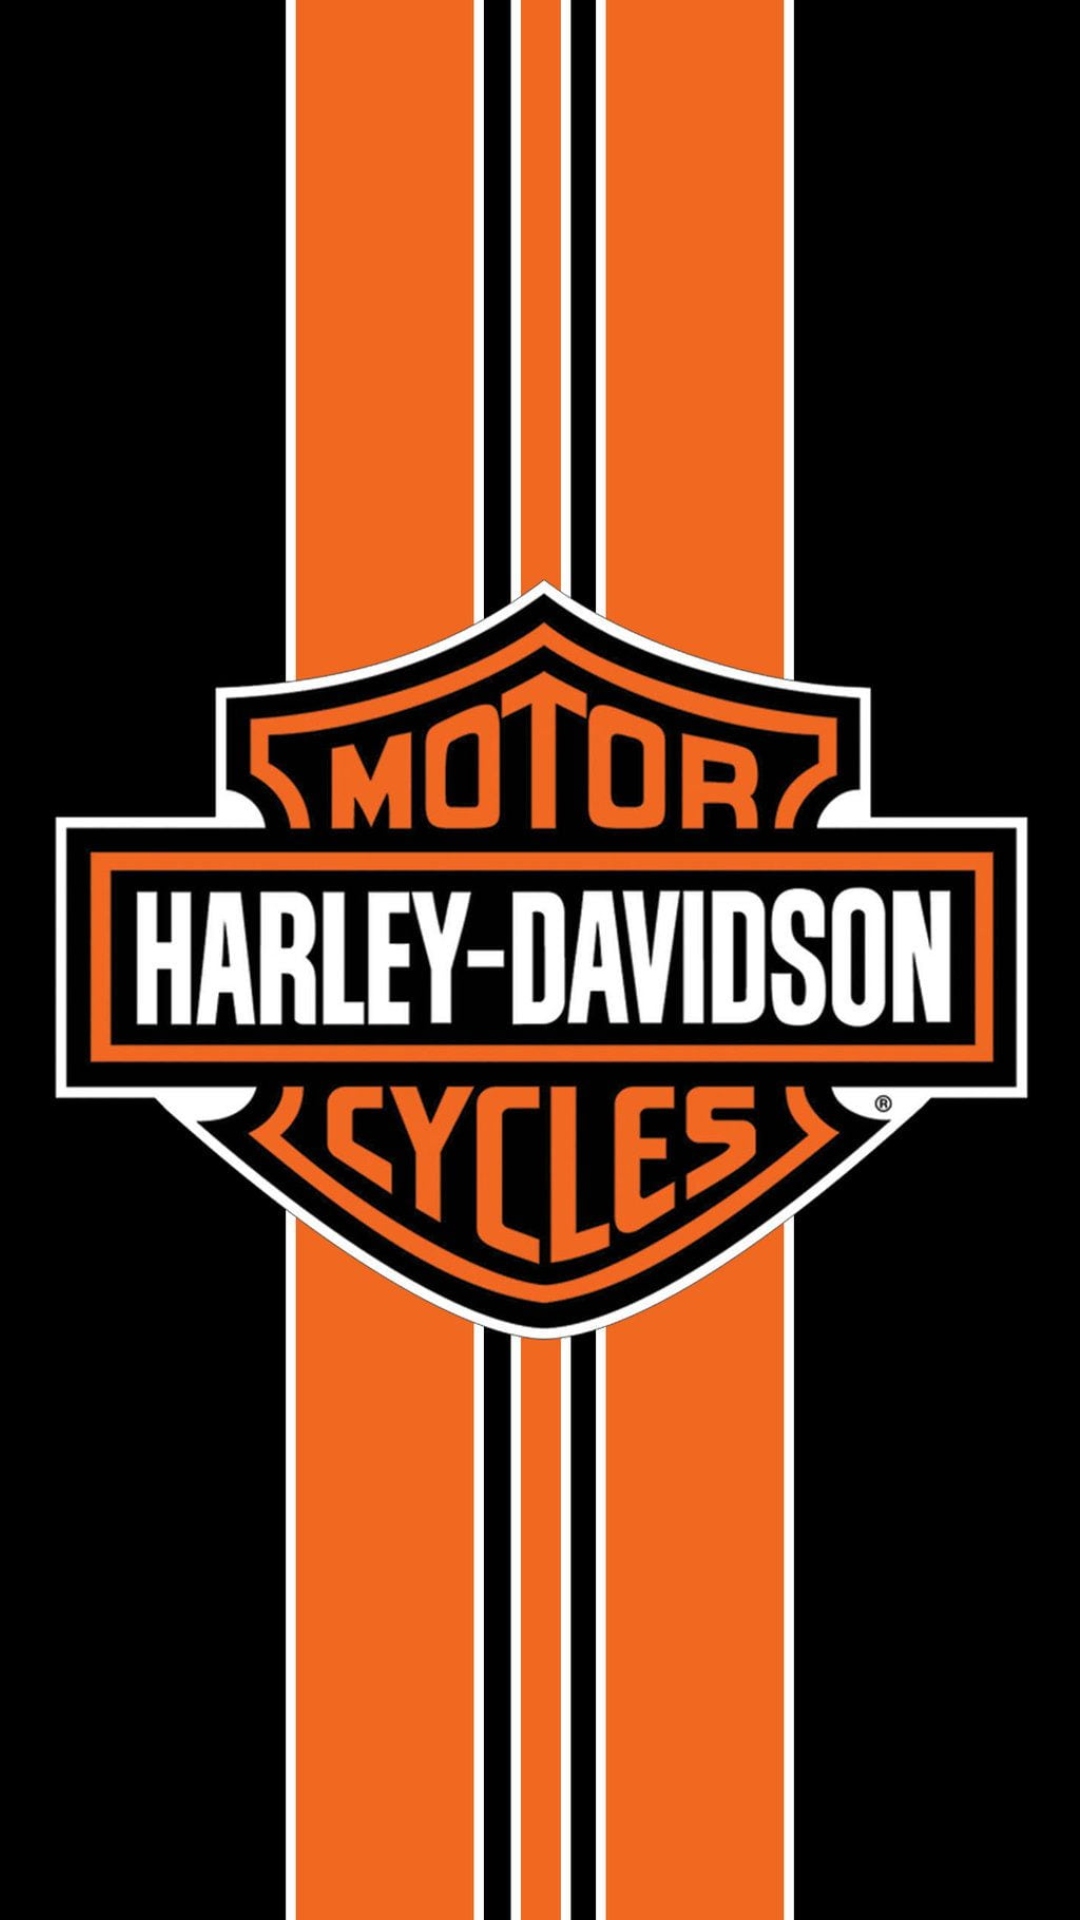 Harley Davidson Logo Wallpaper Images